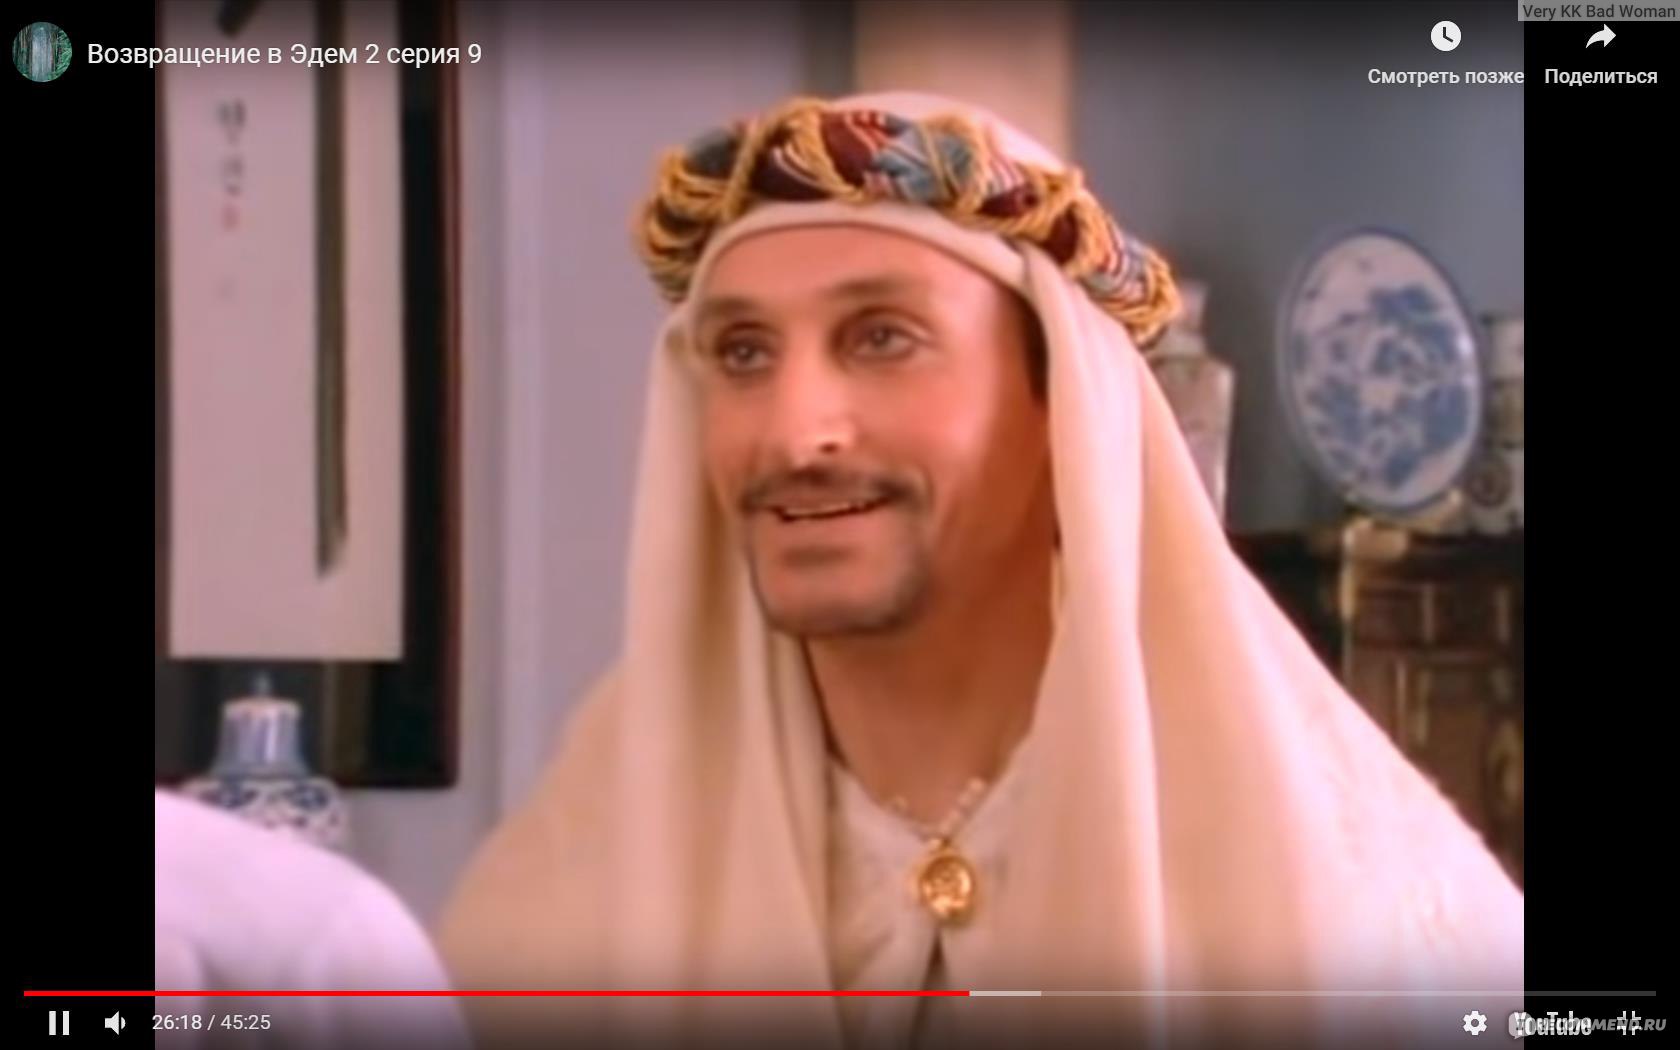 Принц амаль возвращение в эдем фото из сериала